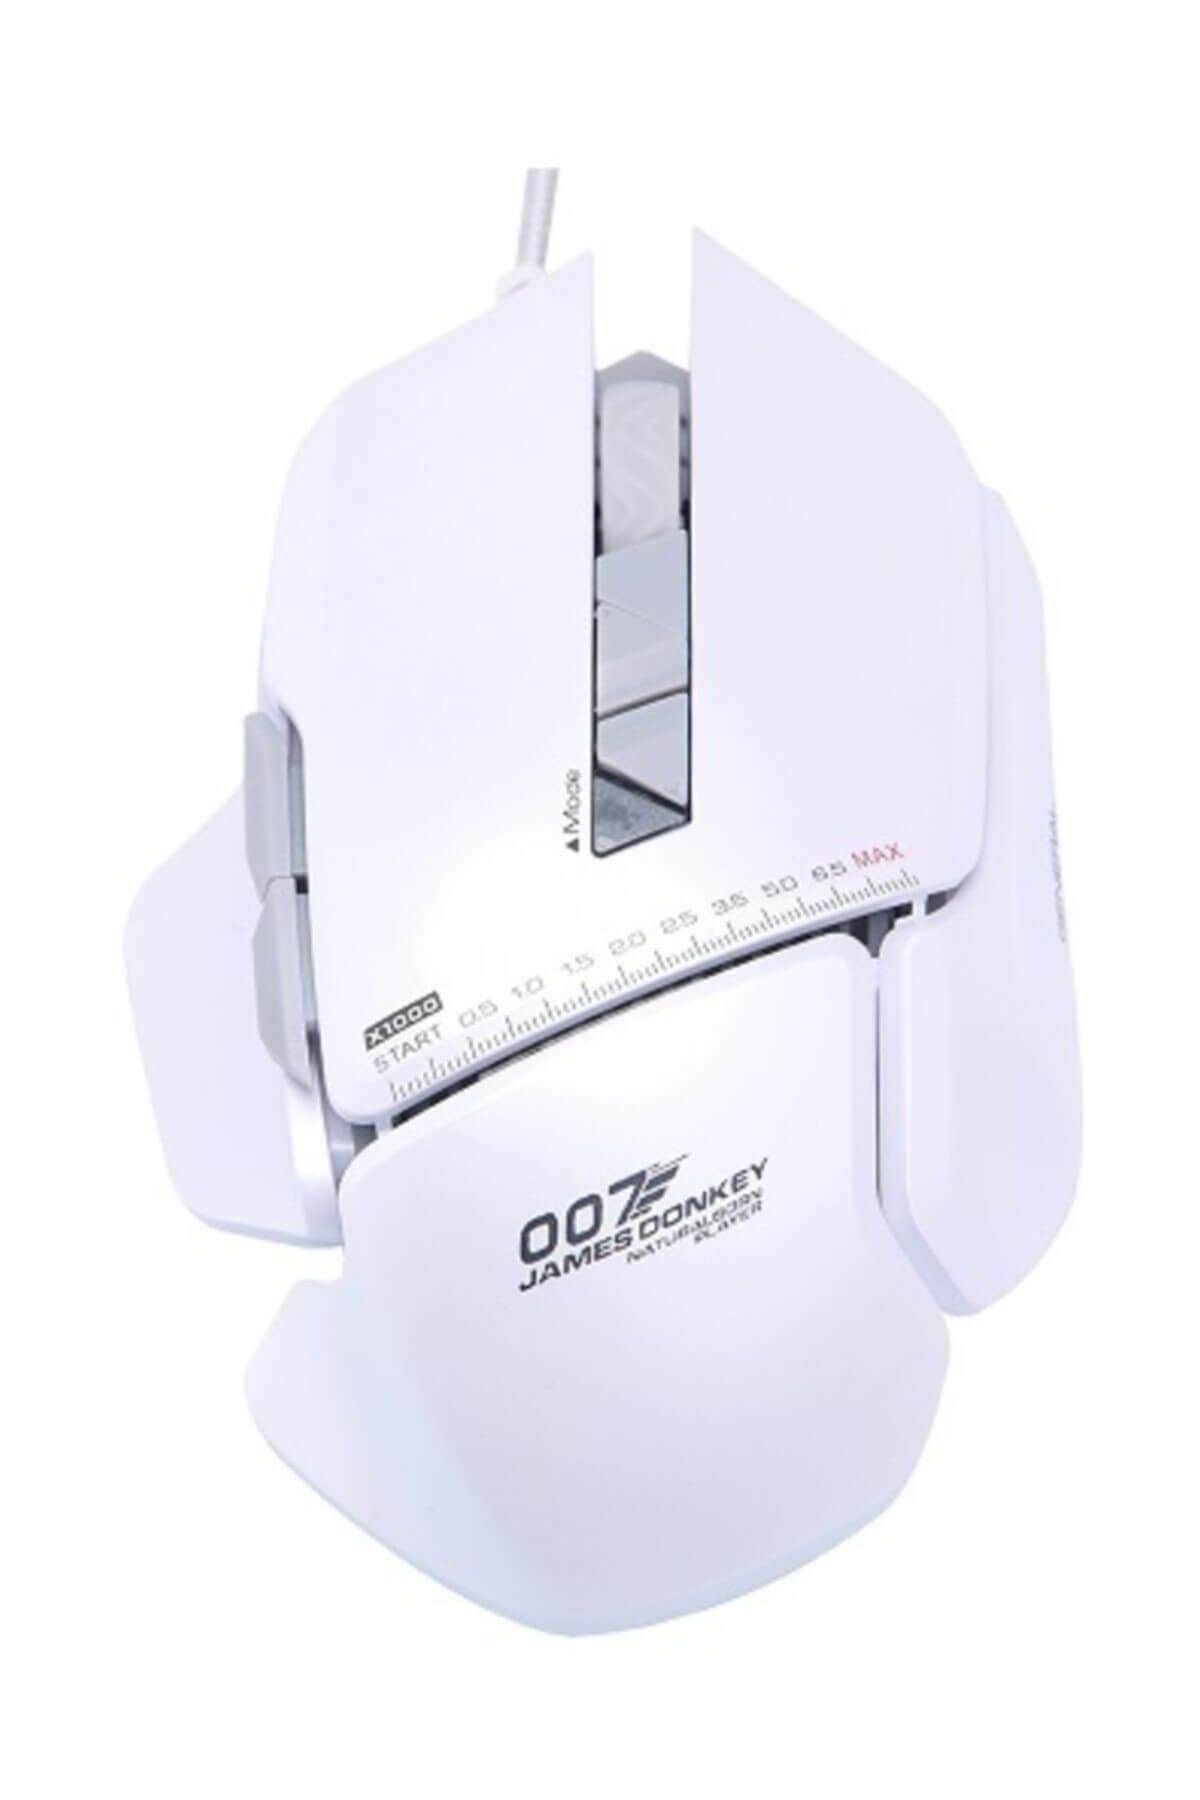 James Donkey 007 Beyaz Lazer 8200DPI Pro USB  Pro Gaming Mouse